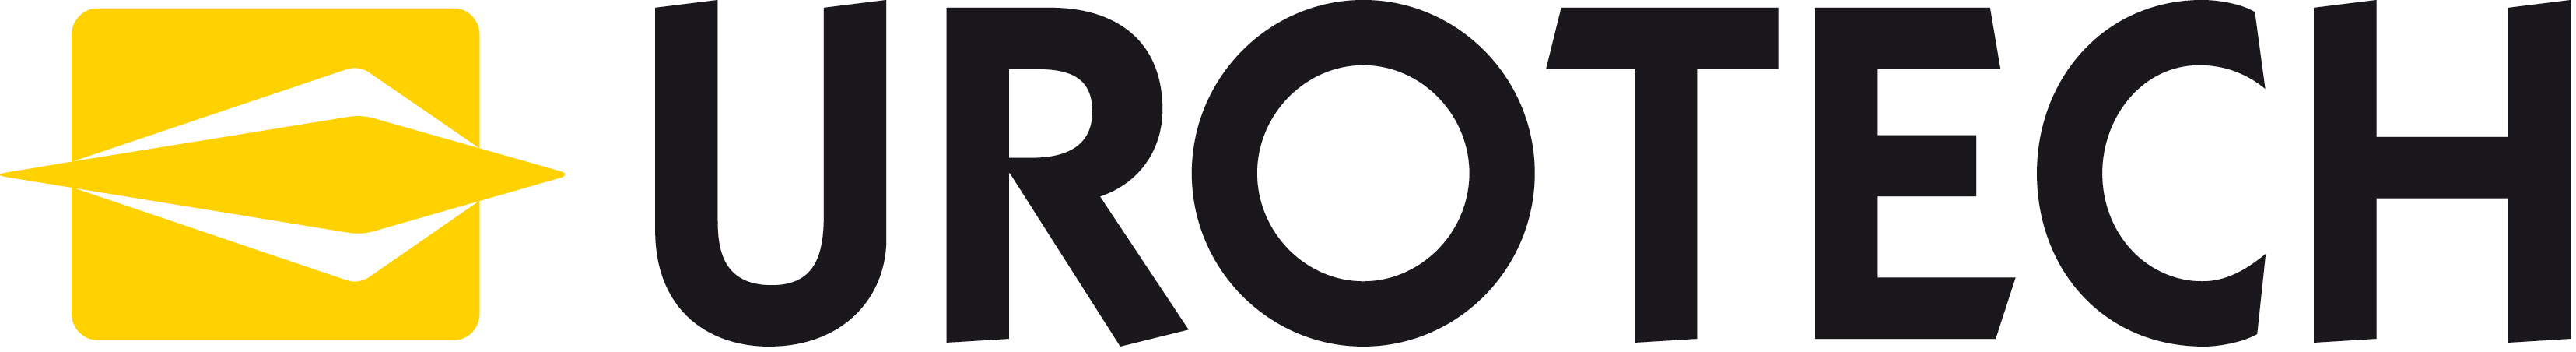 logo-Urotech